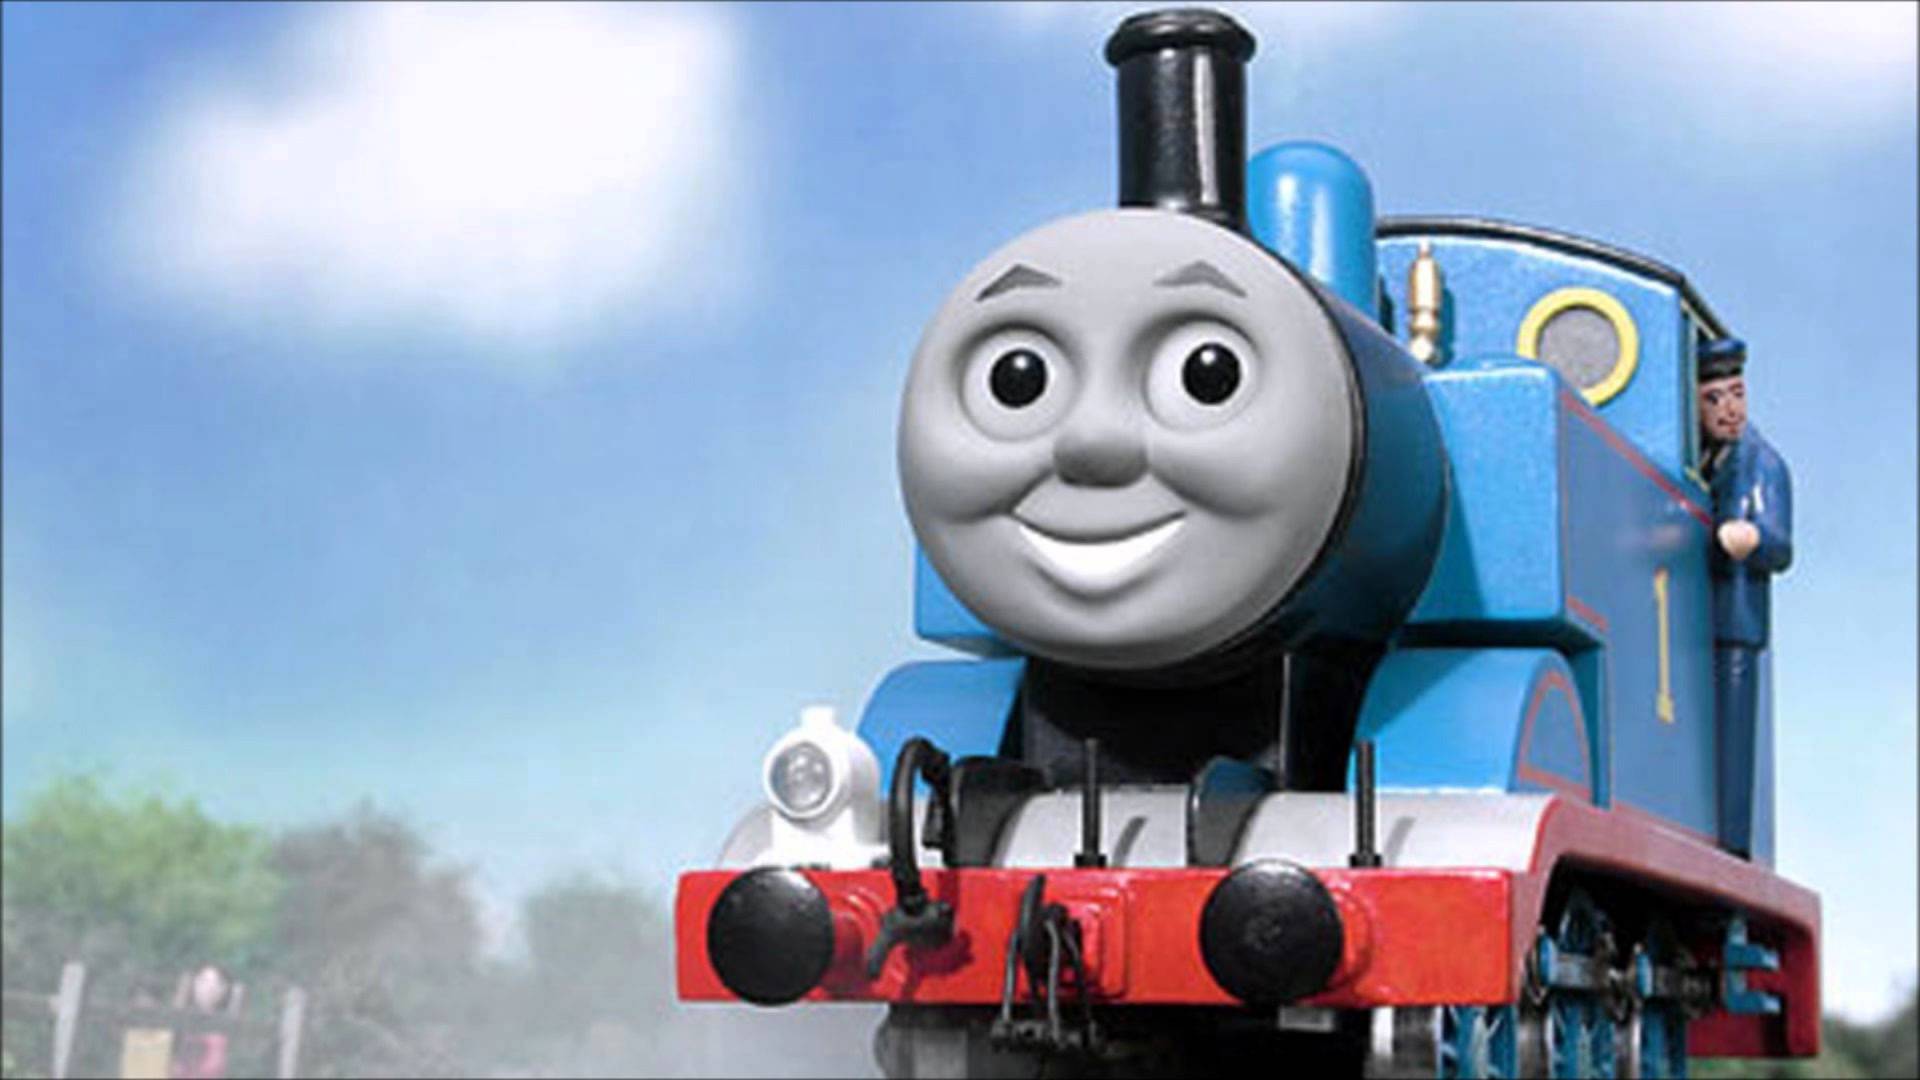 100% Quality Hd-thomas - Cursed Thomas The Train - HD Wallpaper 